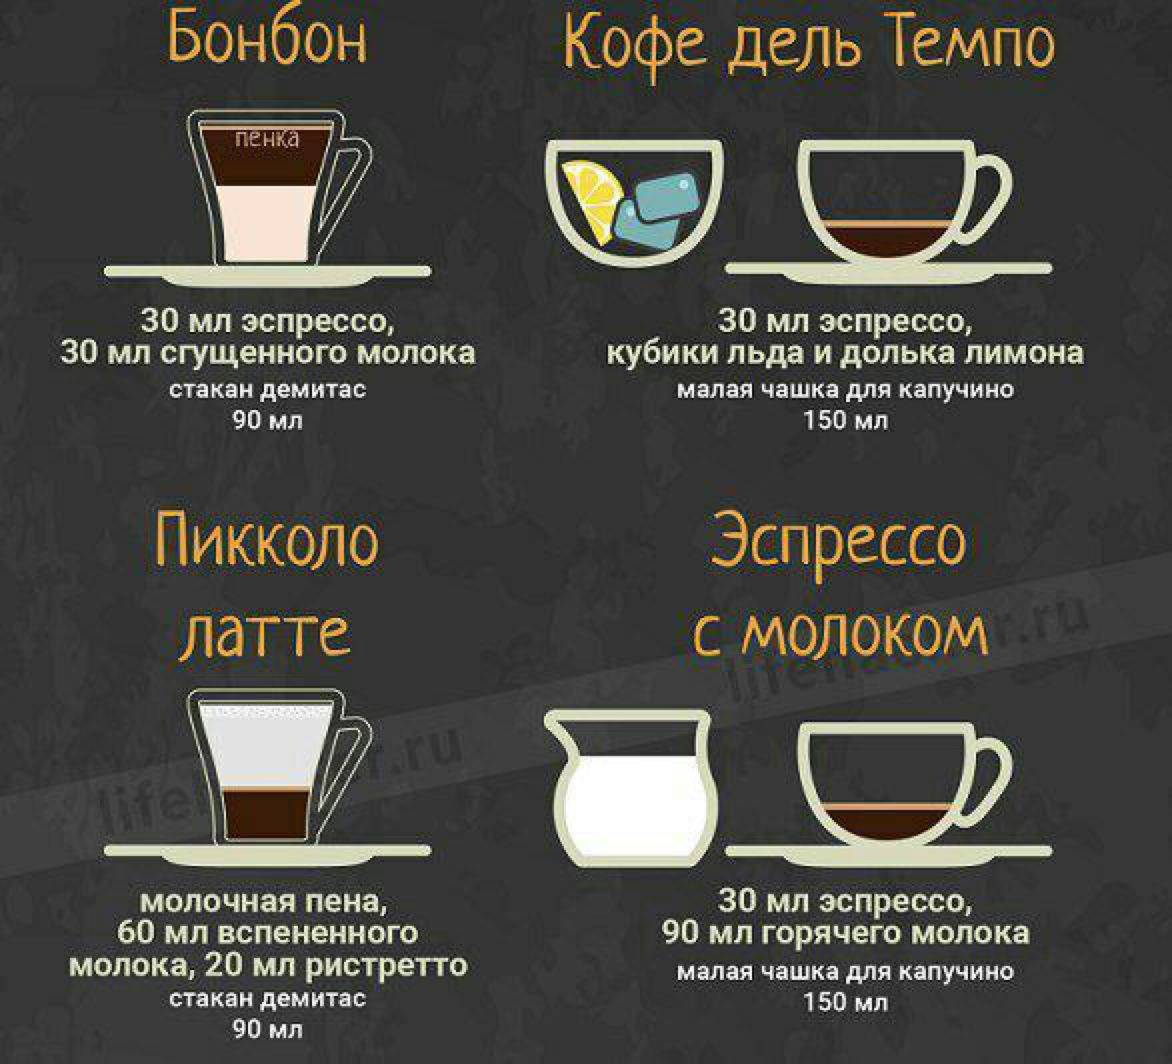 Капучино из растворимого кофе в домашних условиях. Разновидности кофе. Кофейный напиток. Рецептура кофейных напитков. Интересные рецепты кофе.